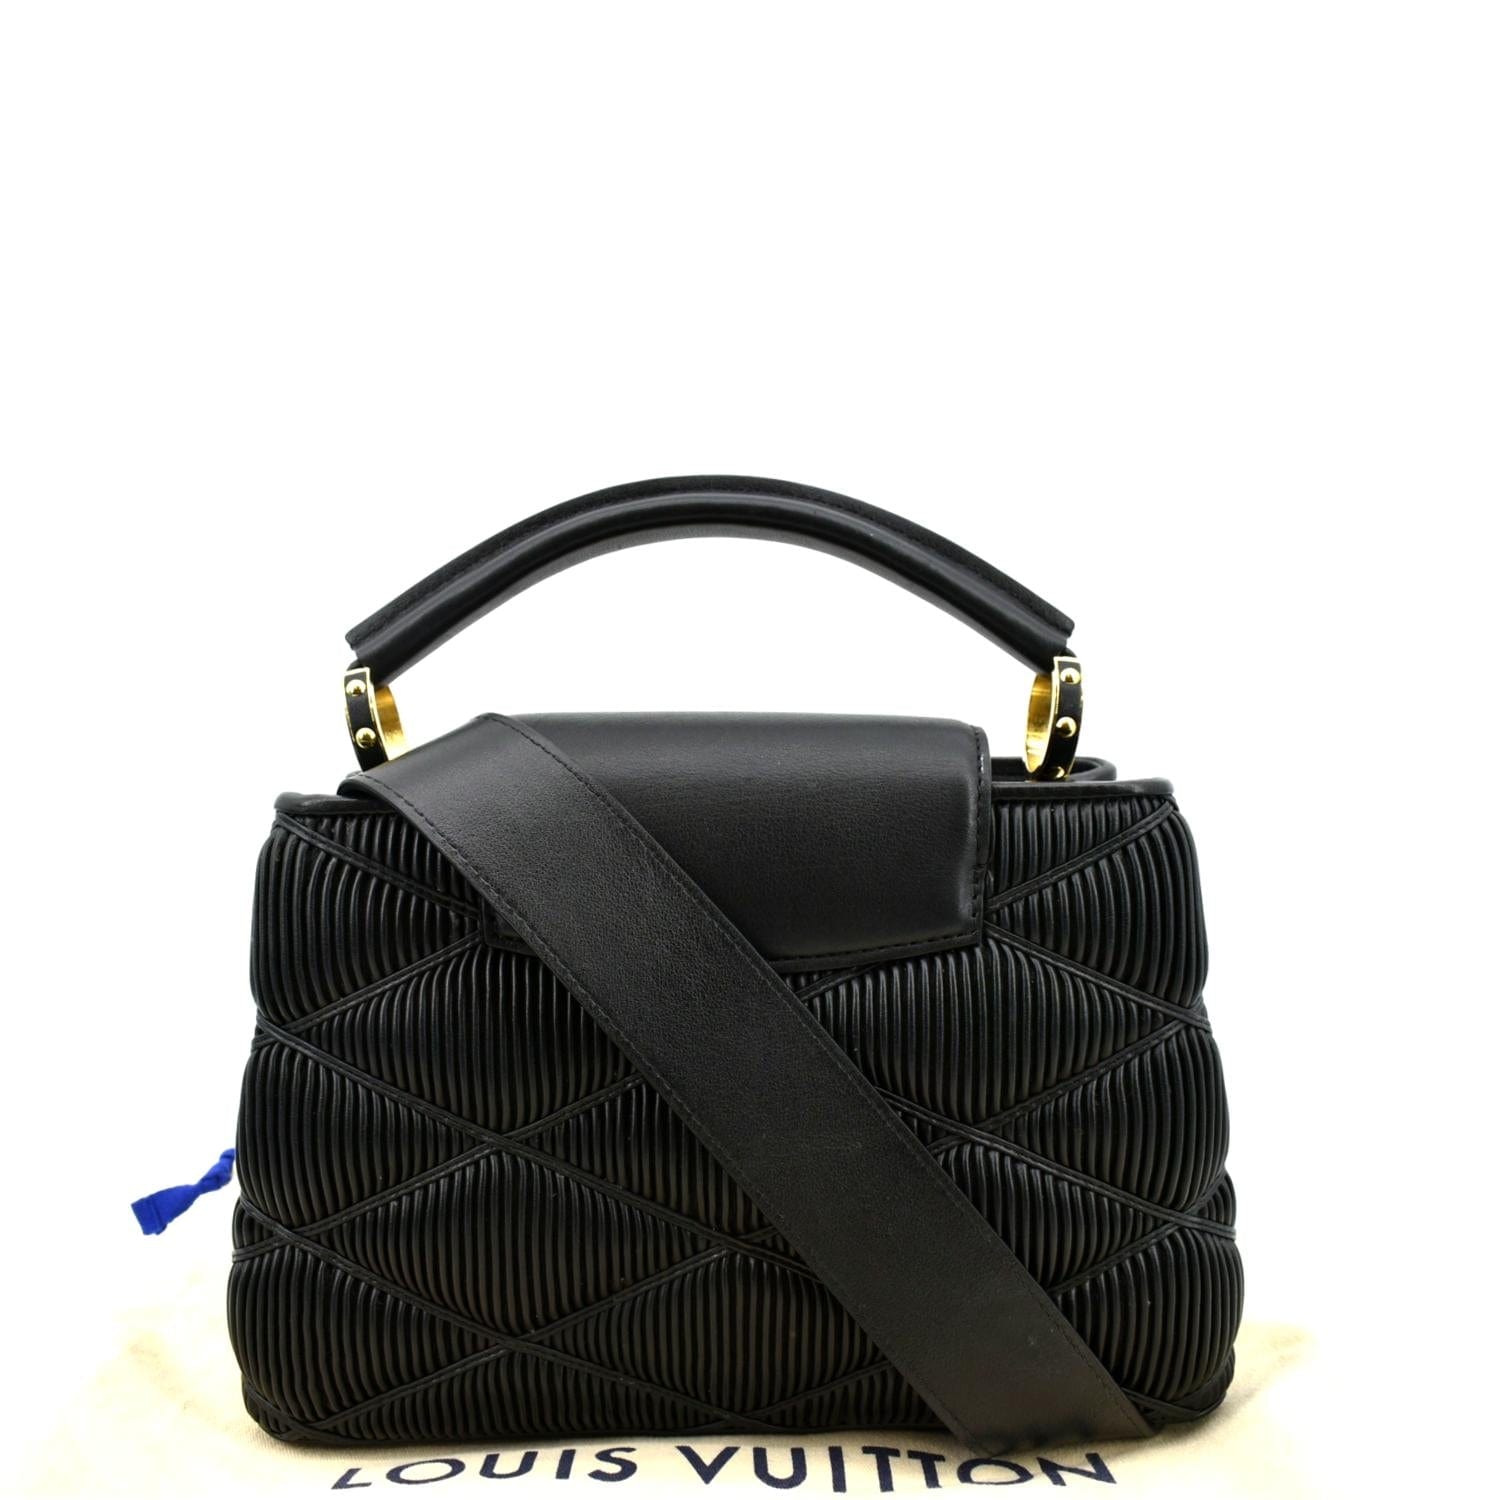 Louis Vuitton Capucines Mini Leather Satchel Bag